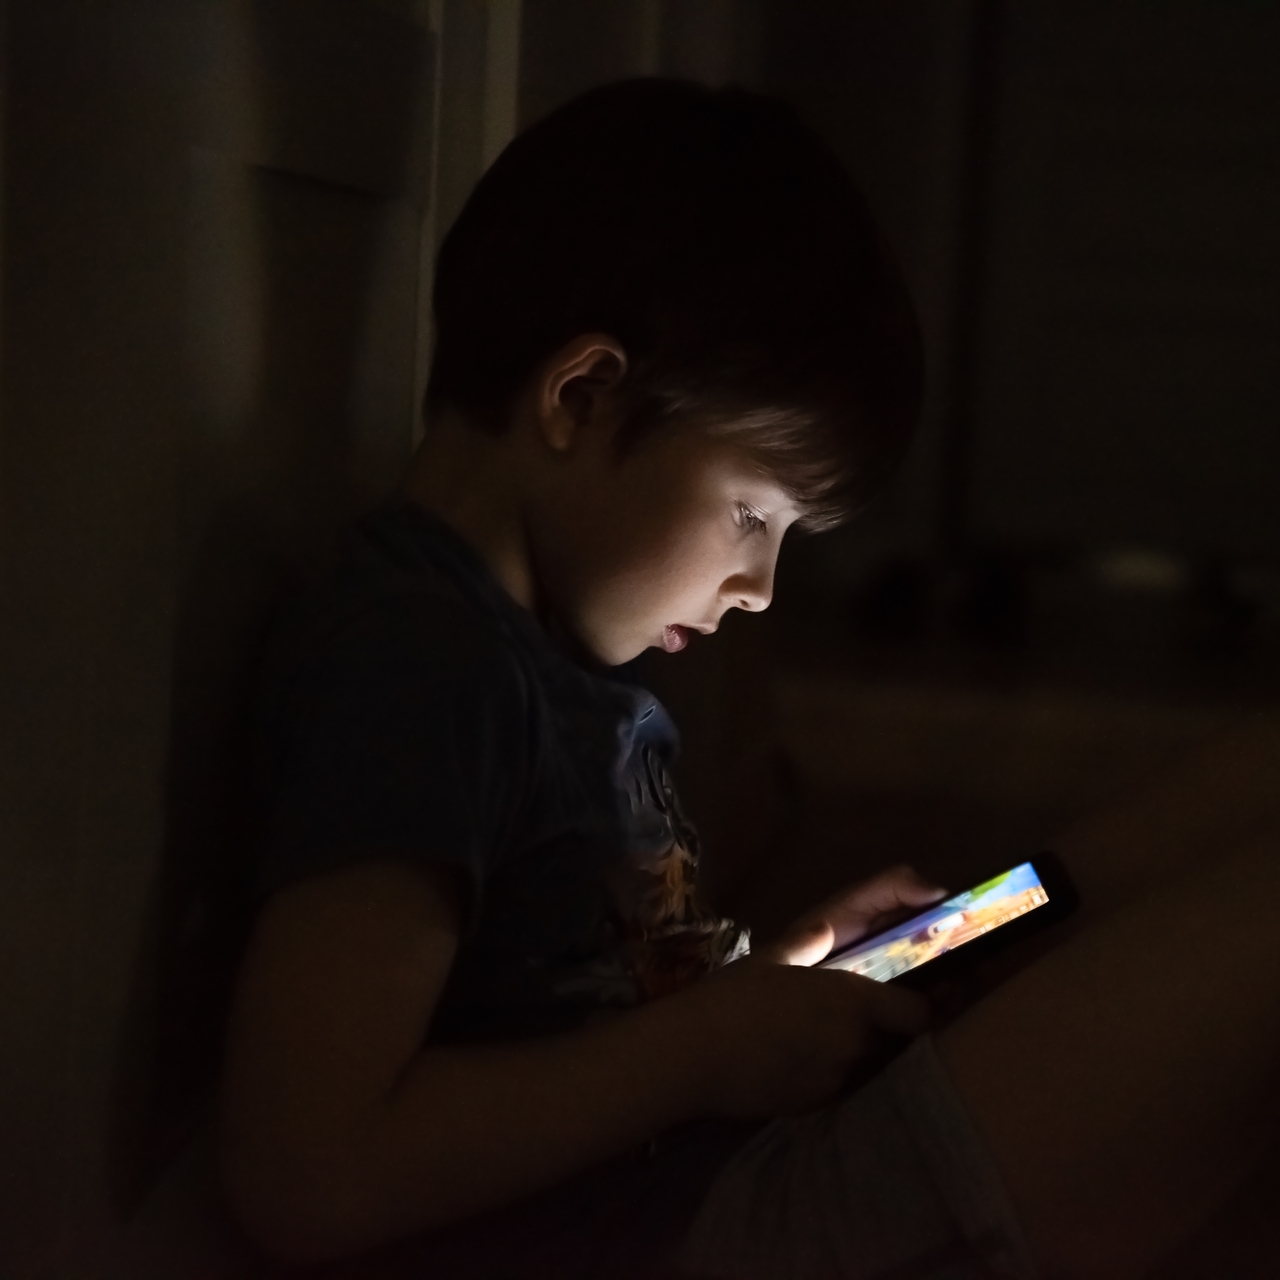 Cep telefonlarına uzun süre bakmak çocuklarda körlüğe yol açabilir